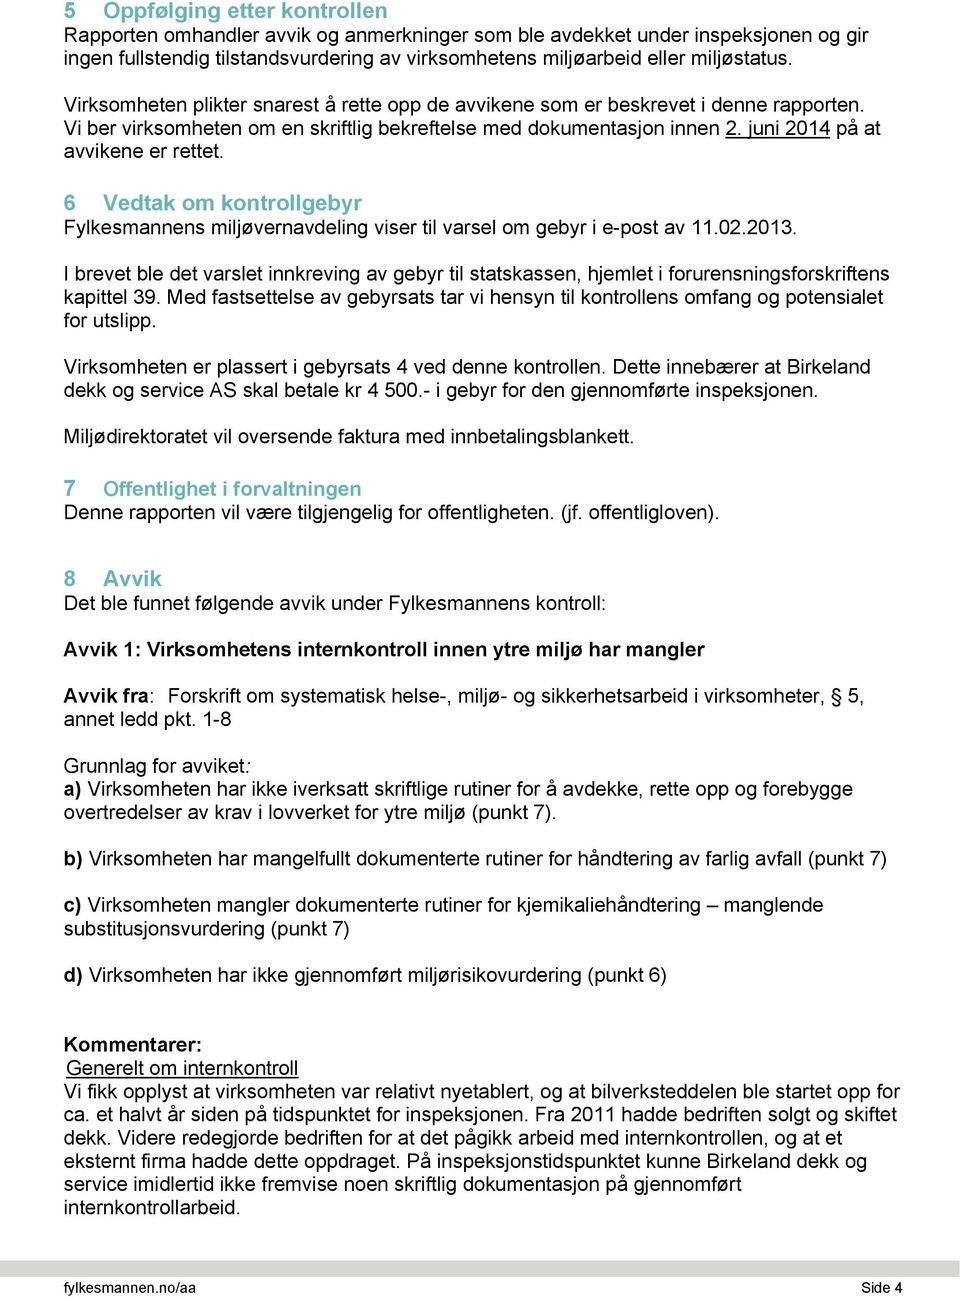 6 Vedtak om kontrollgebyr Fylkesmannens miljøvernavdeling viser til varsel om gebyr i e-post av 11.02.2013.